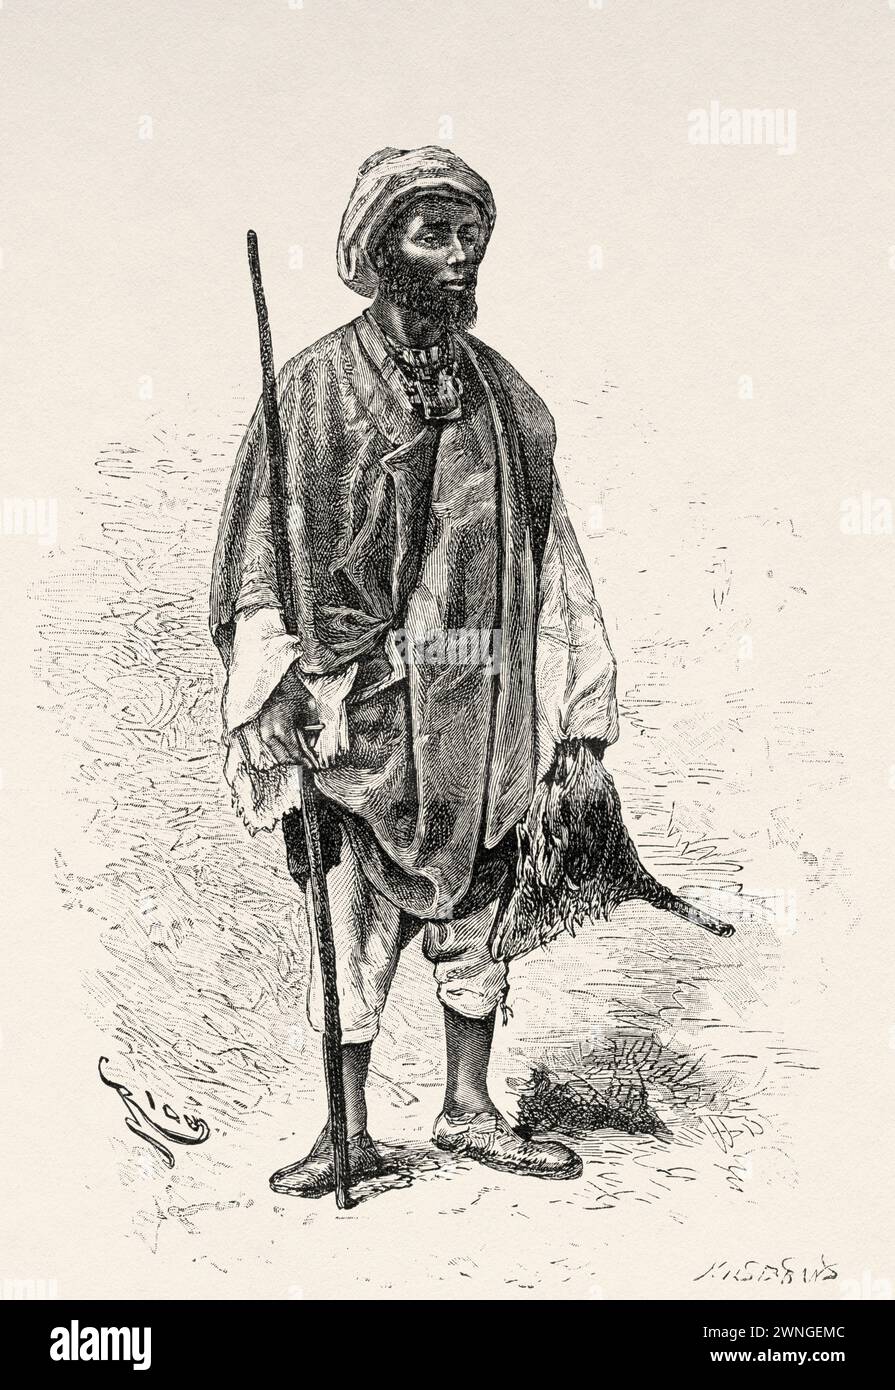 Fara Moussa the chief of Tiguibiri, Guinea. Africa. Two campaigns in French Sudan, 1886-1888 by Joseph Simon Gallieni (1849 - 1916) Le Tour du Monde 1890 Stock Photo